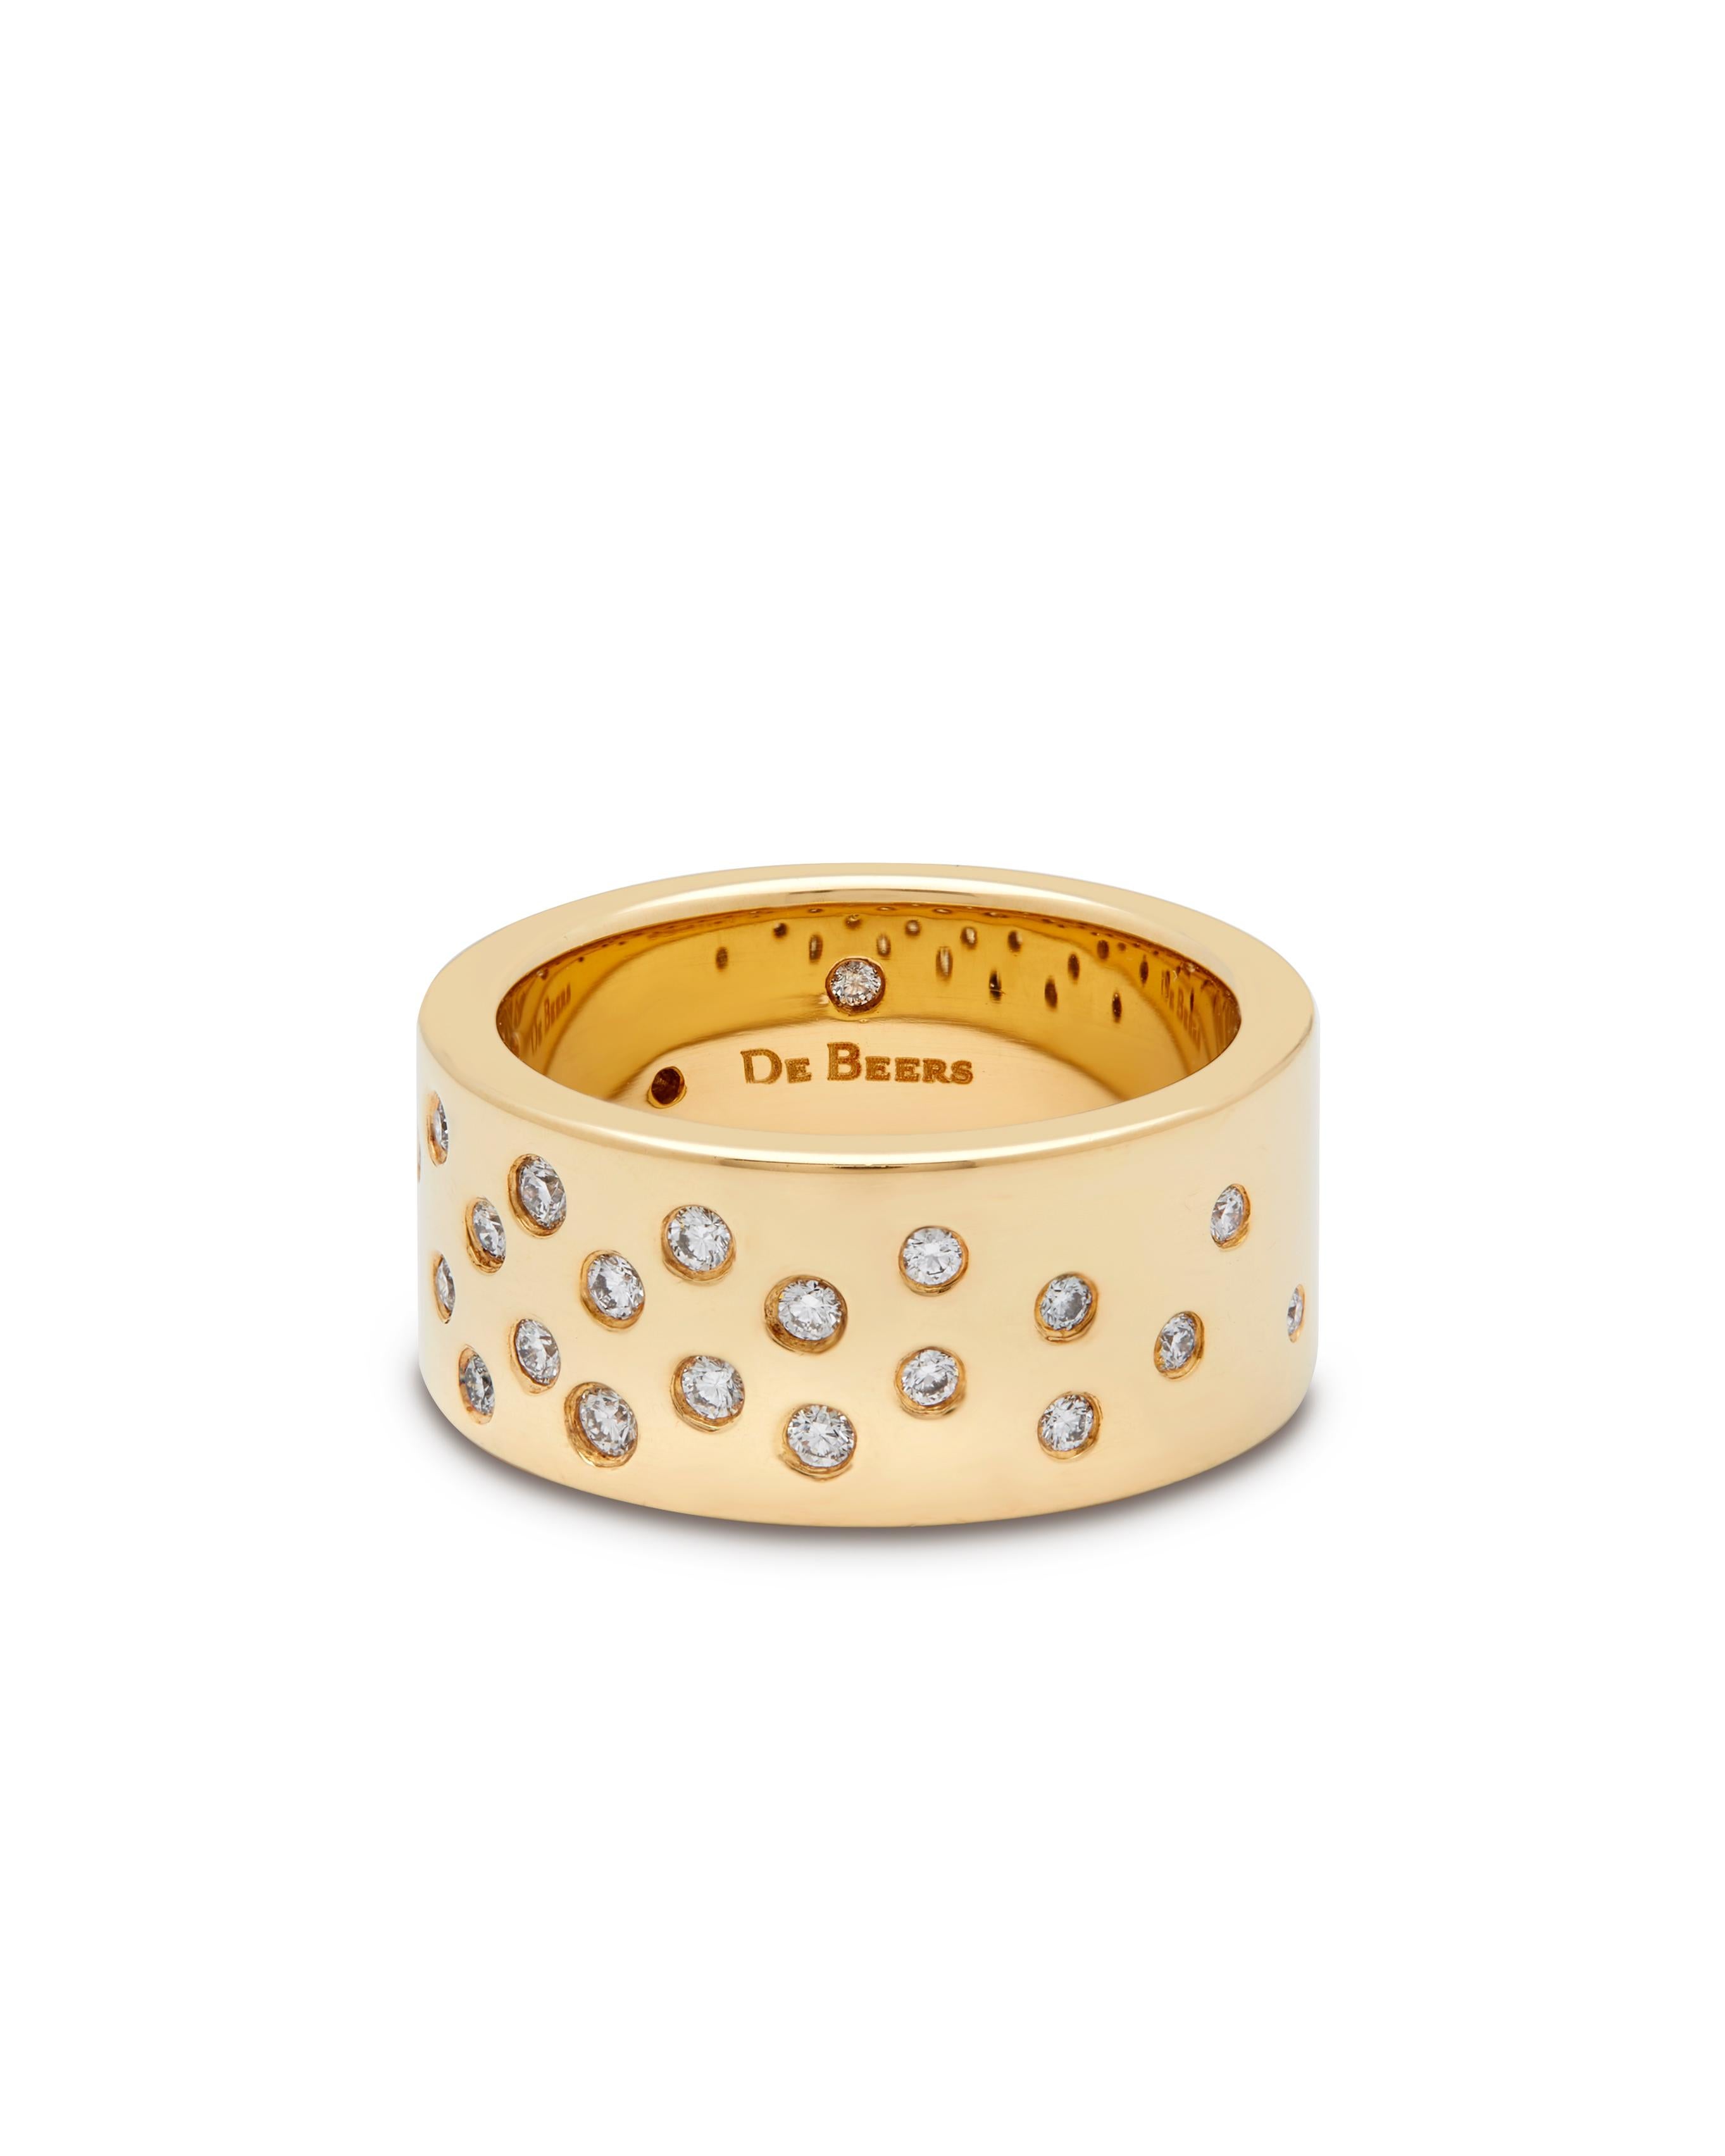 De Beers Ring aus 18 Karat Gelbgold mit Diamanten.

Der Ring ist mit 26 runden Diamanten im Brillantschliff besetzt, von denen einer auf der Innenseite des Rings versteckt ist. Das Gesamtgewicht beträgt ca. 0,47ct, Farbe F-G und Reinheit VS. 
Der 9